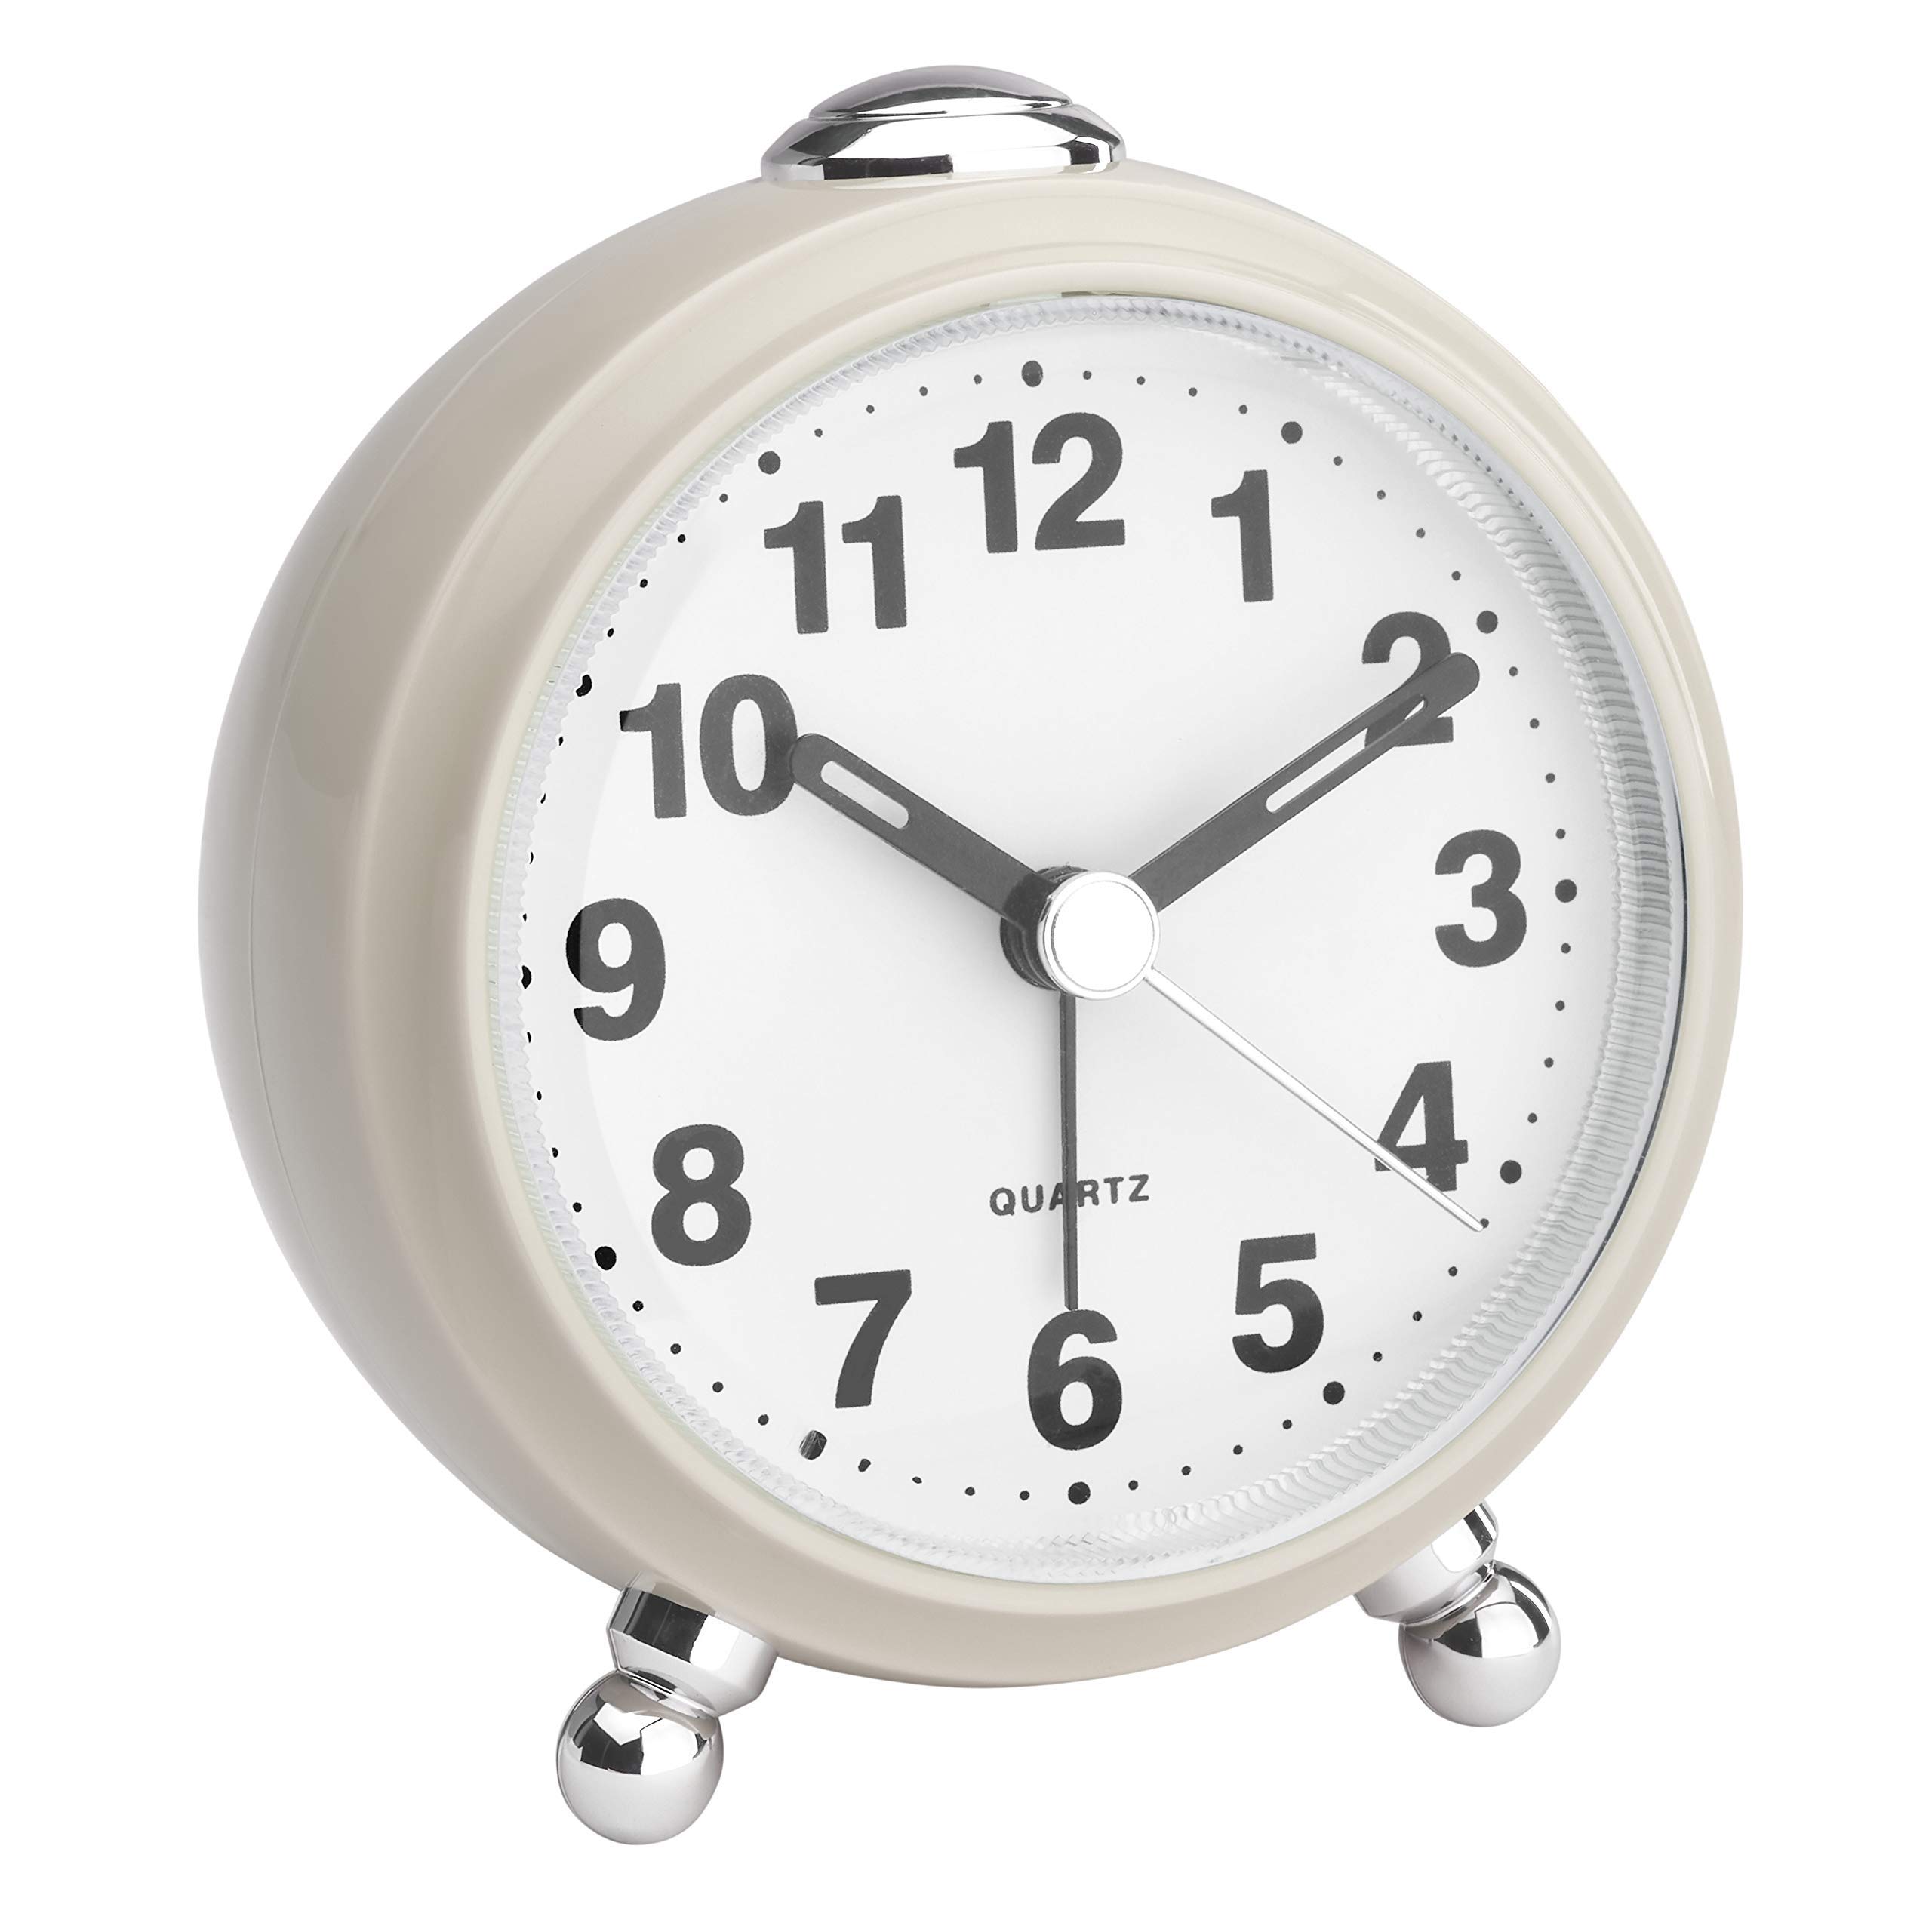 Analogue alarm clock